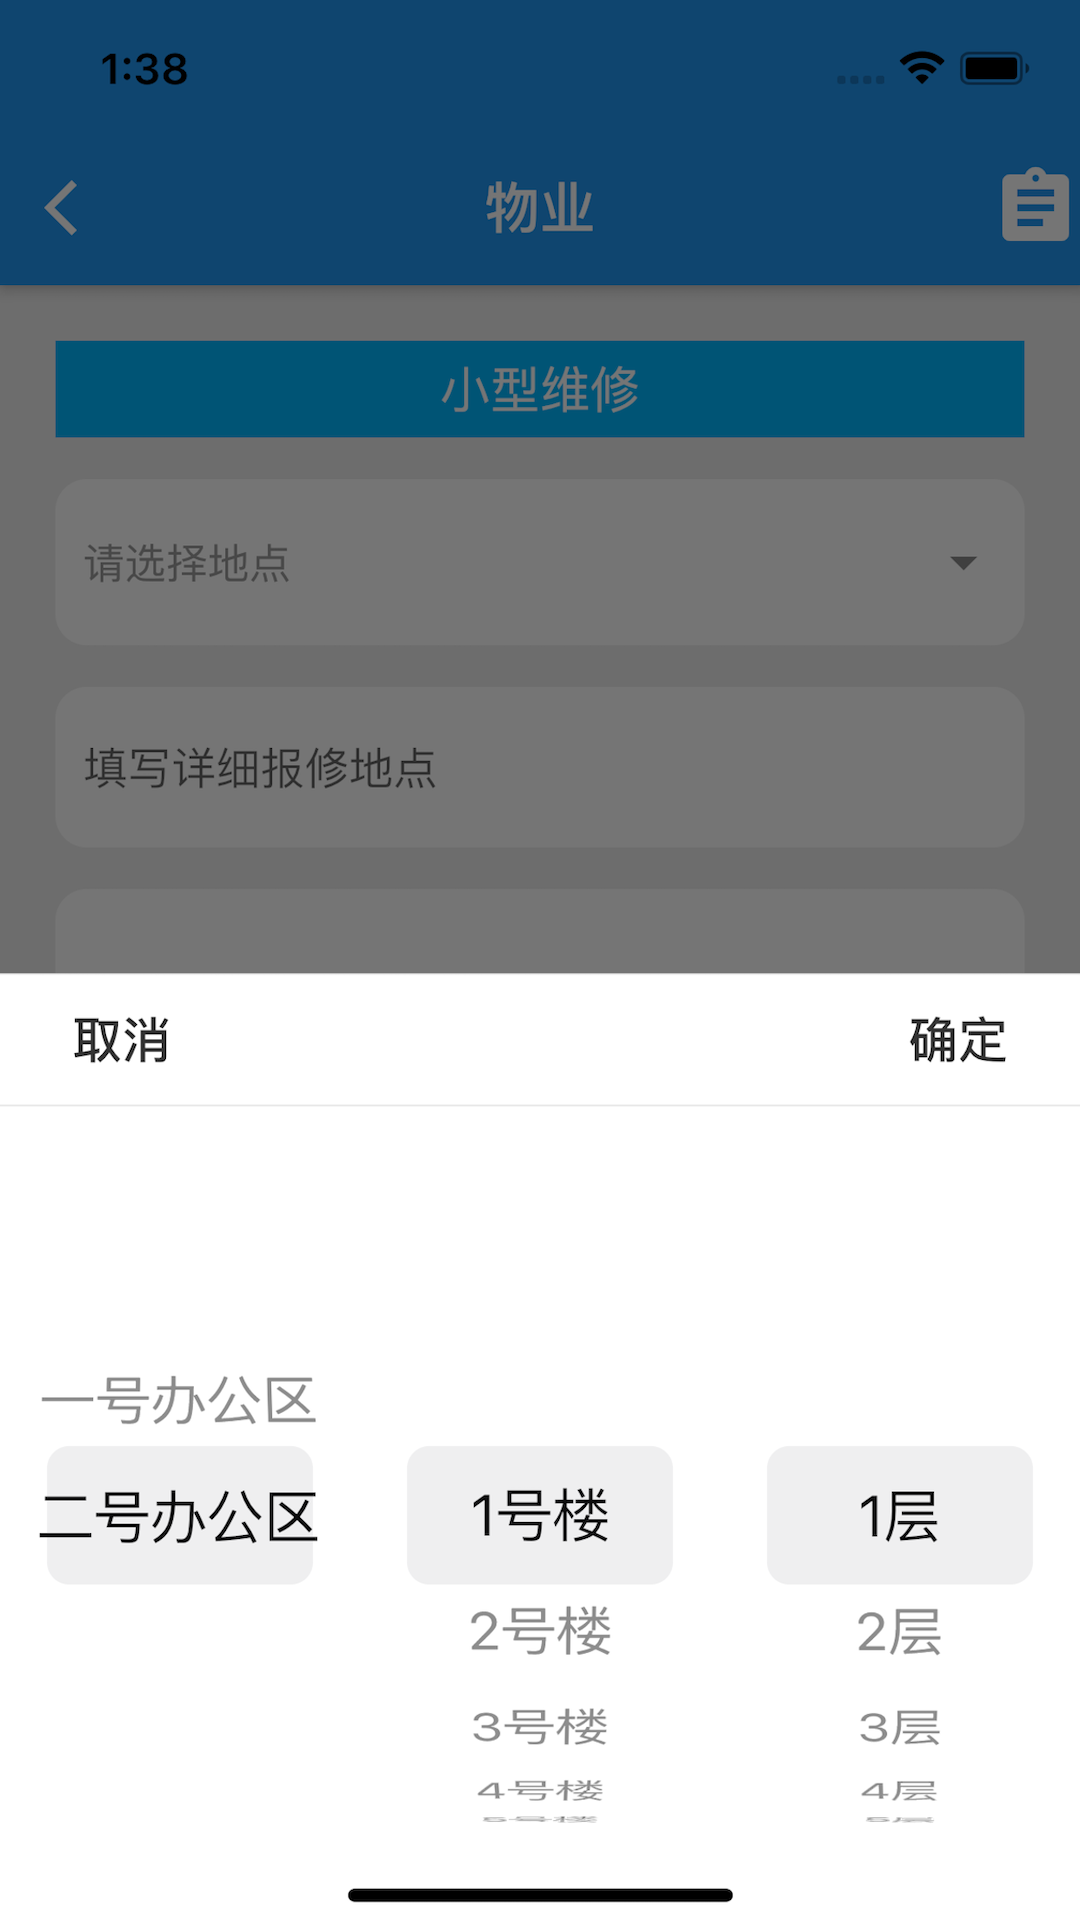 塔库物业综合保障app官方版图片1